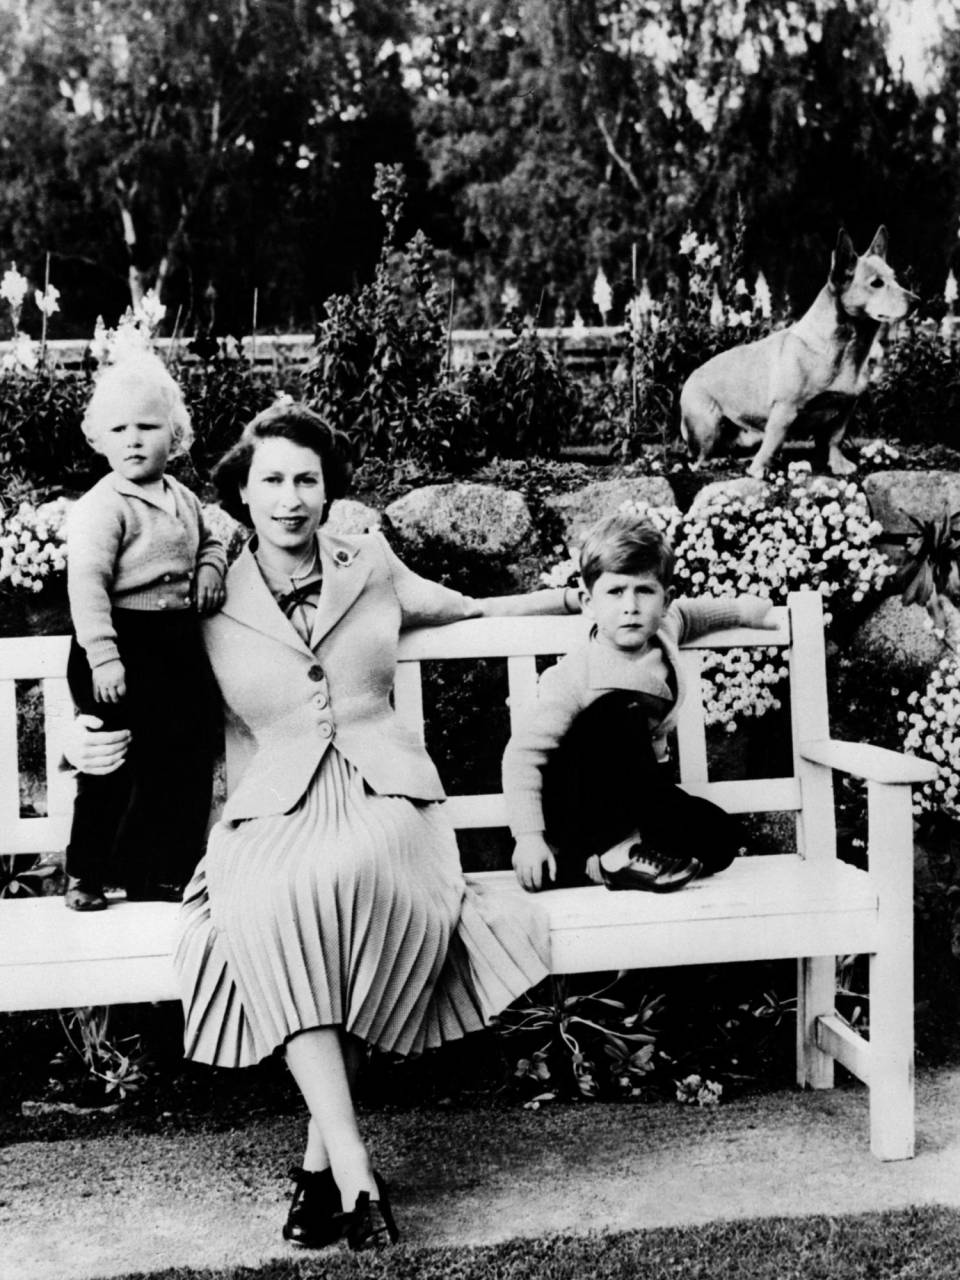 Esta foto tomada en 1954 muestra a la reina Isabel II posando junto a sus hijos Carlos y Ana en uno de los jardines de Balmoral.